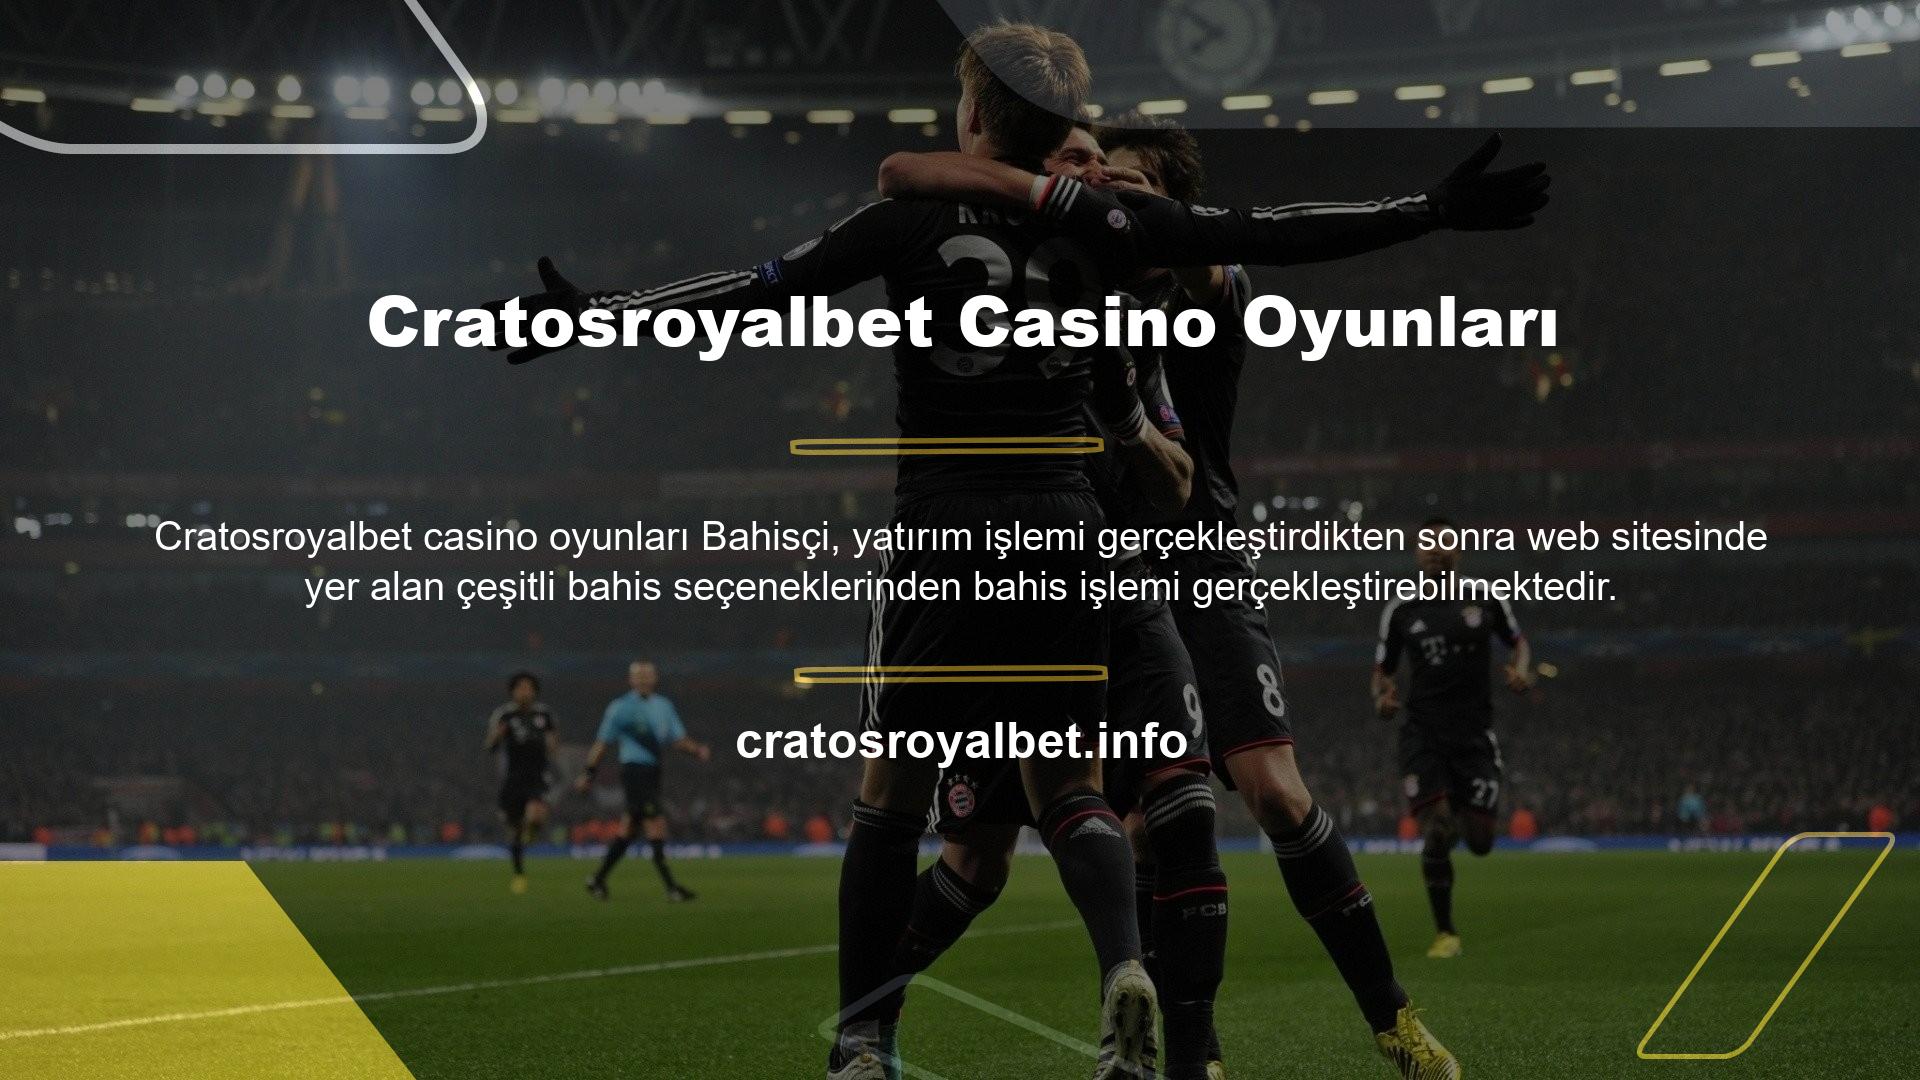 Cratosroyalbet Casino Games, bahis tutkunlarının kaliteli ve sorunsuz bahis yapmalarını sağlayan uygulama içi seçeneklerden biridir